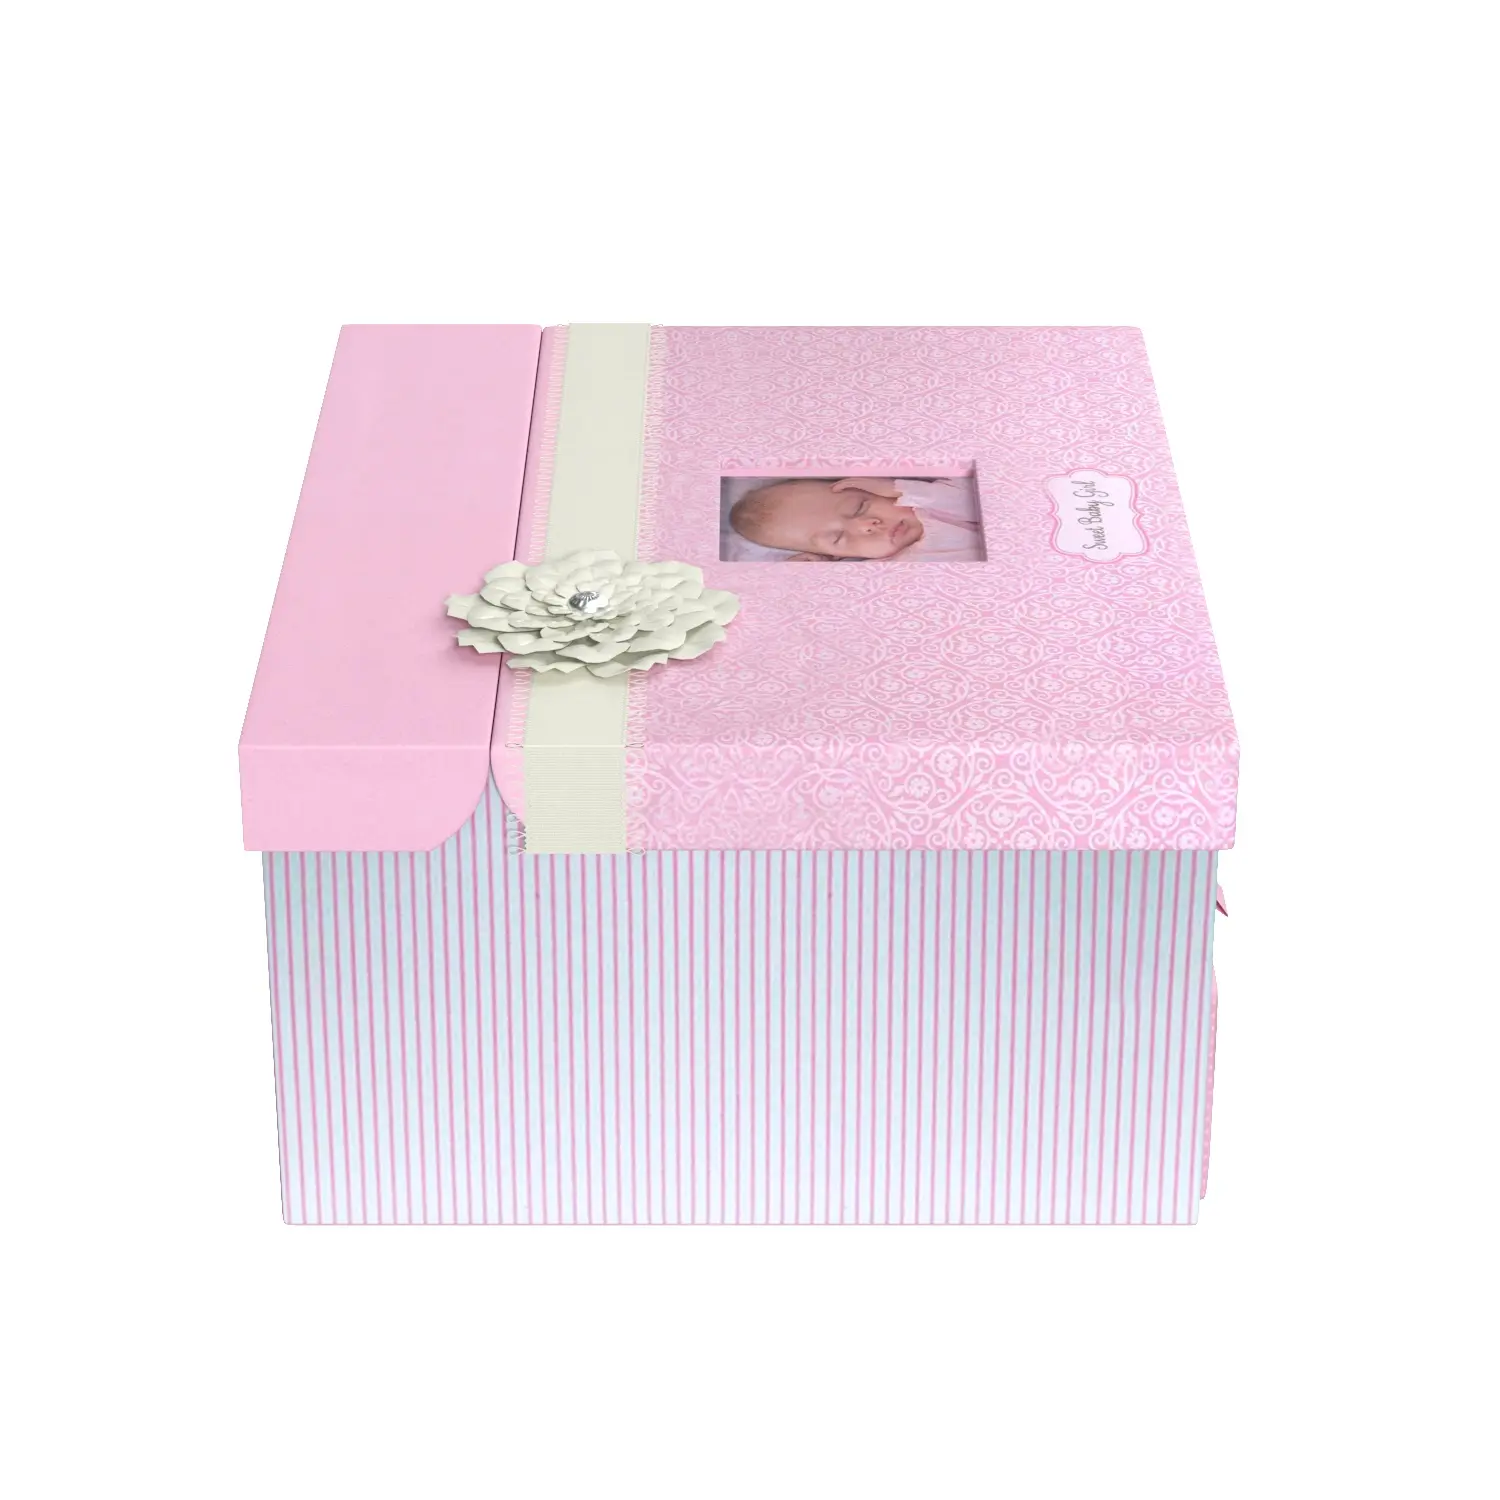 C R Gibson Pink Baby Girl Large Keepsake Box 3D Model_03